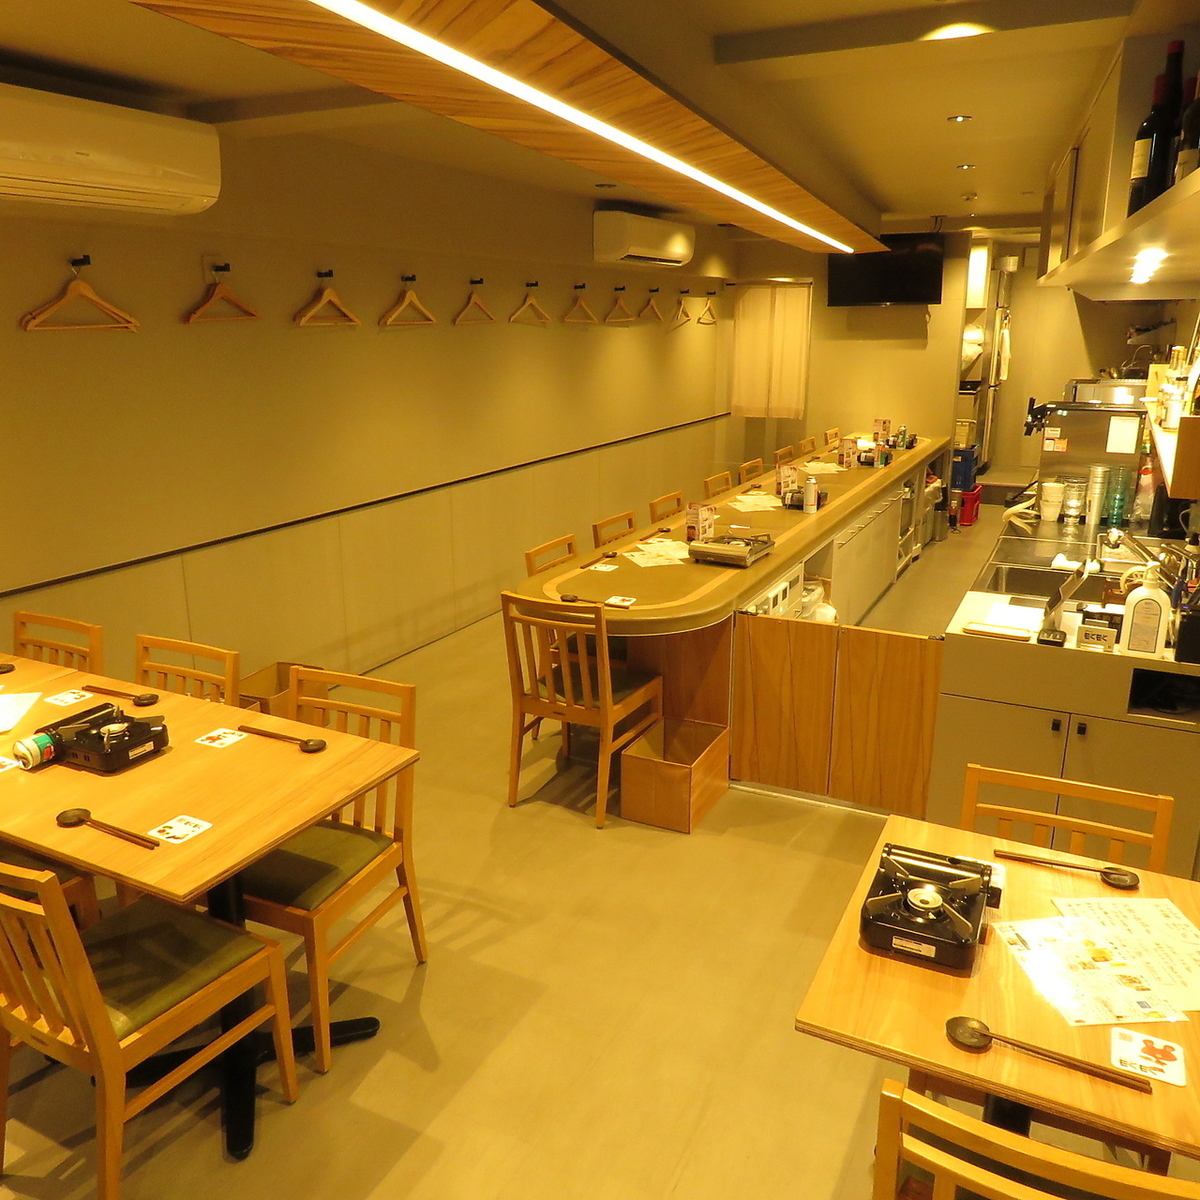 밥솥 만두나 모츠나베 등 하카타 명물요리를 먹을 수 있는 세련된 선술집